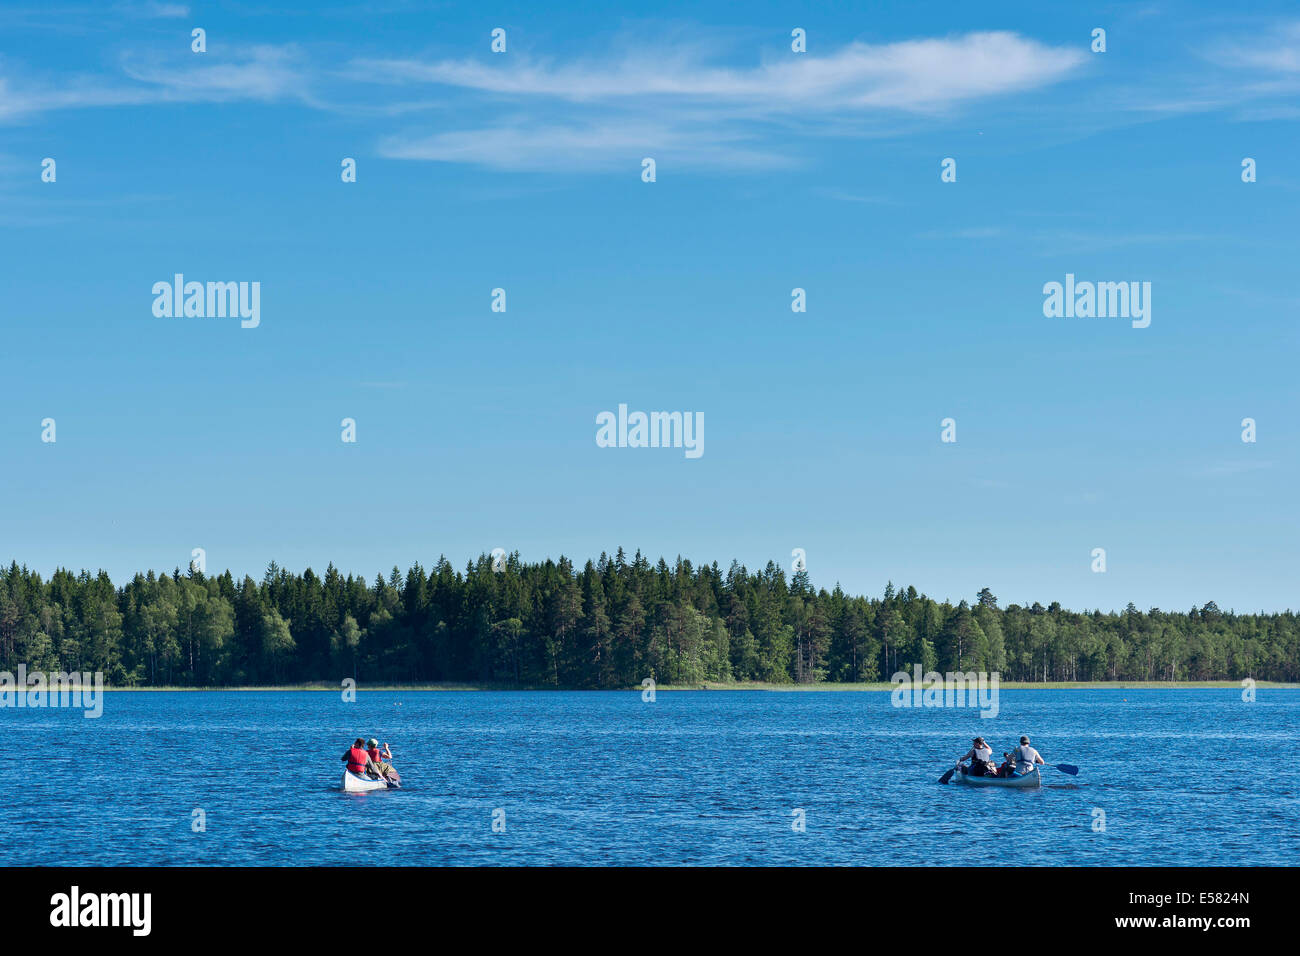 Zwei Kanus mit Kanuten auf See Asnen, Smaland, Schweden Stockfoto